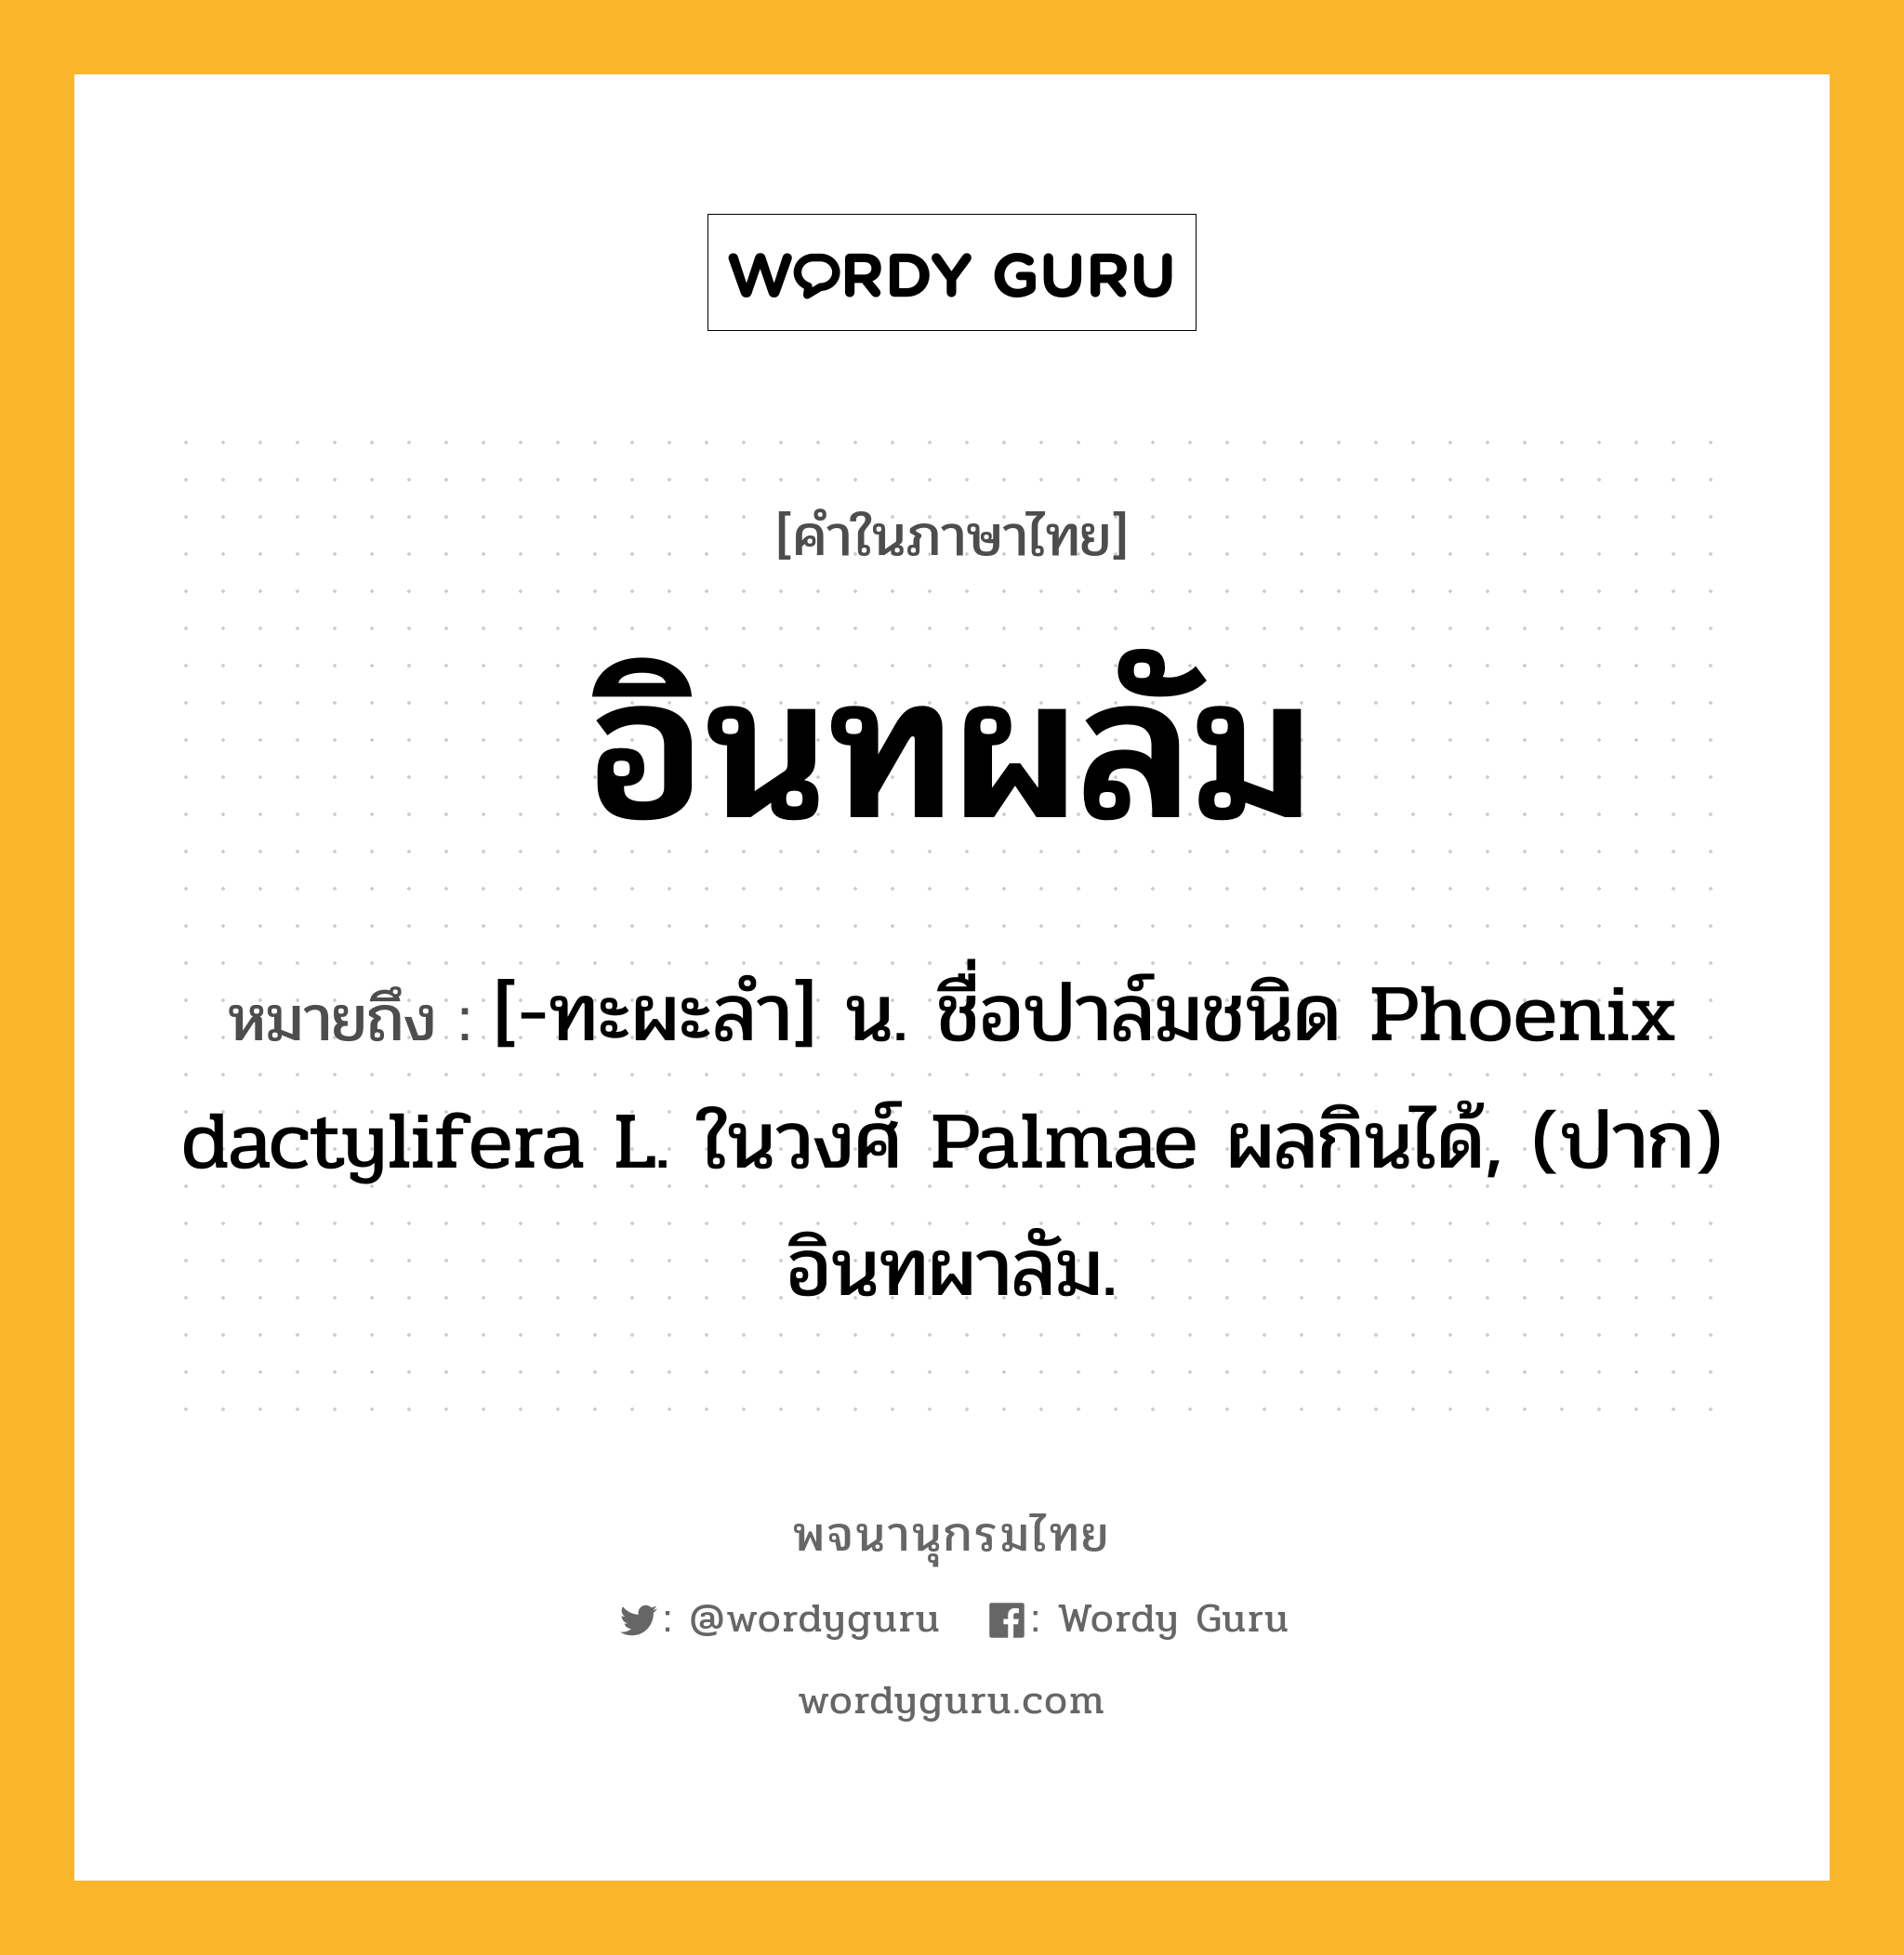 อินทผลัม หมายถึงอะไร?, คำในภาษาไทย อินทผลัม หมายถึง [-ทะผะลํา] น. ชื่อปาล์มชนิด Phoenix dactylifera L. ในวงศ์ Palmae ผลกินได้, (ปาก) อินทผาลัม.